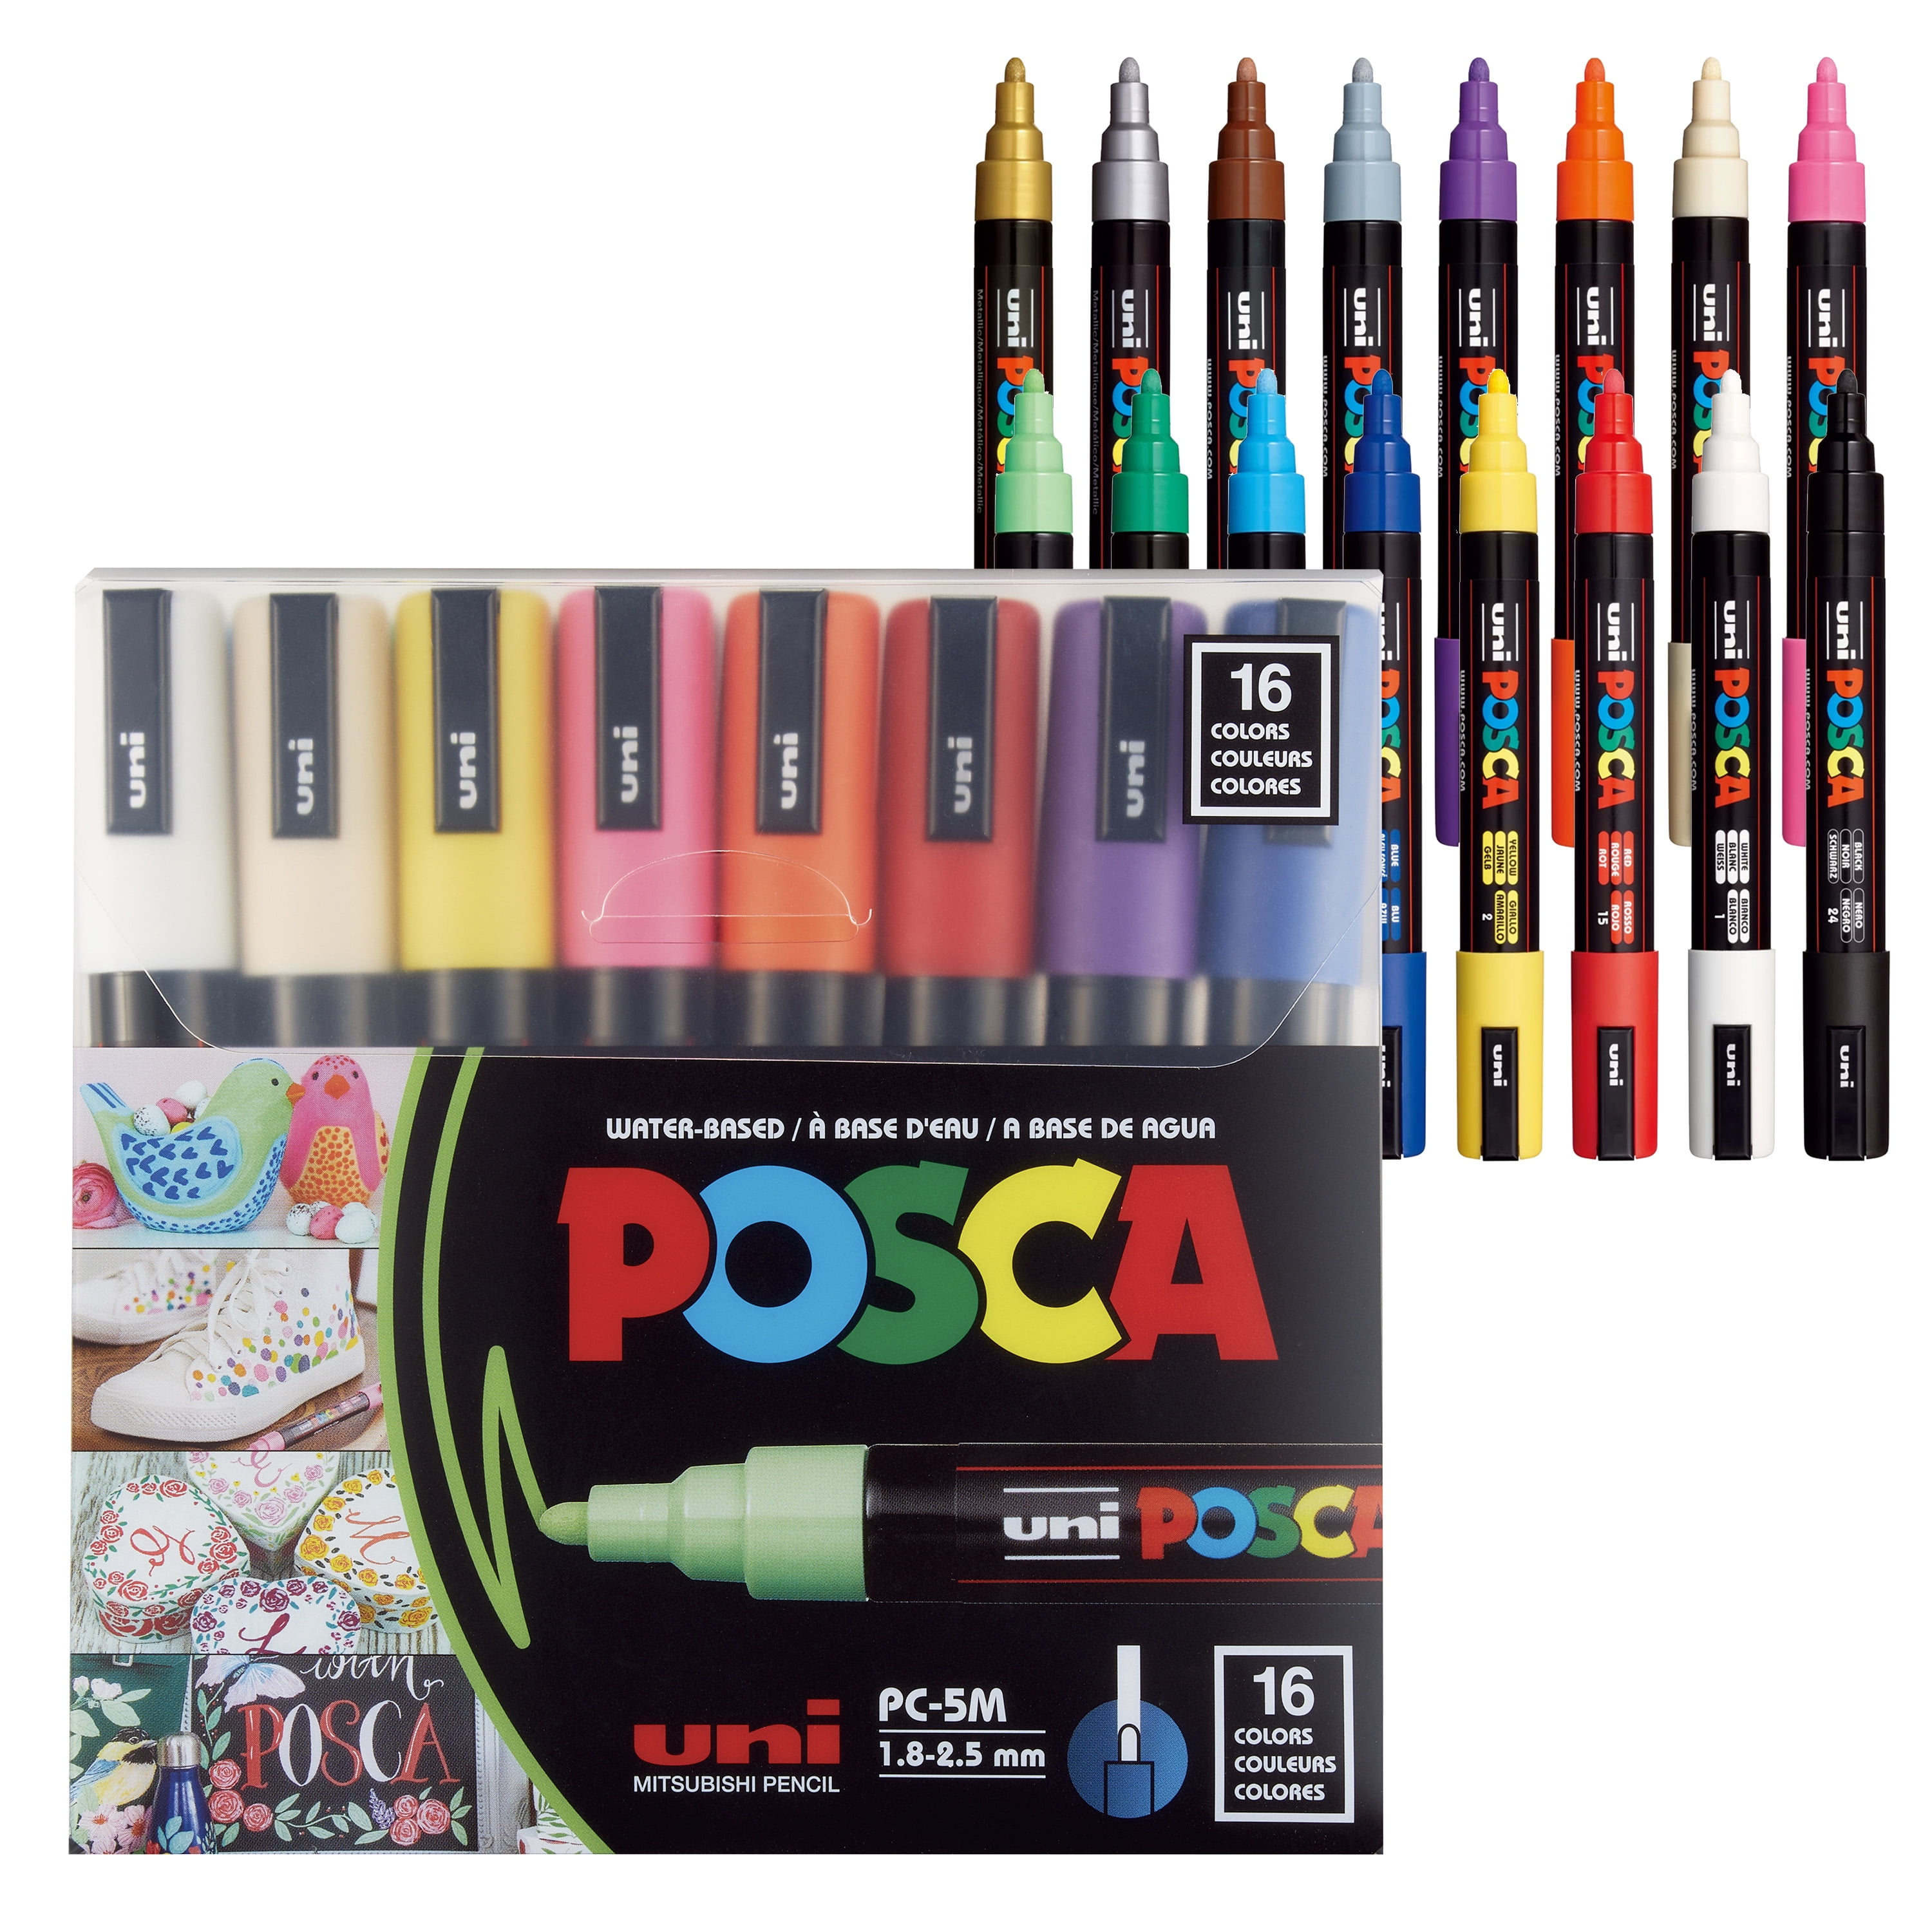 Uni Posca Paint Marker PC-5M - Medium Point - Dark Colors - 5 Color Bundle